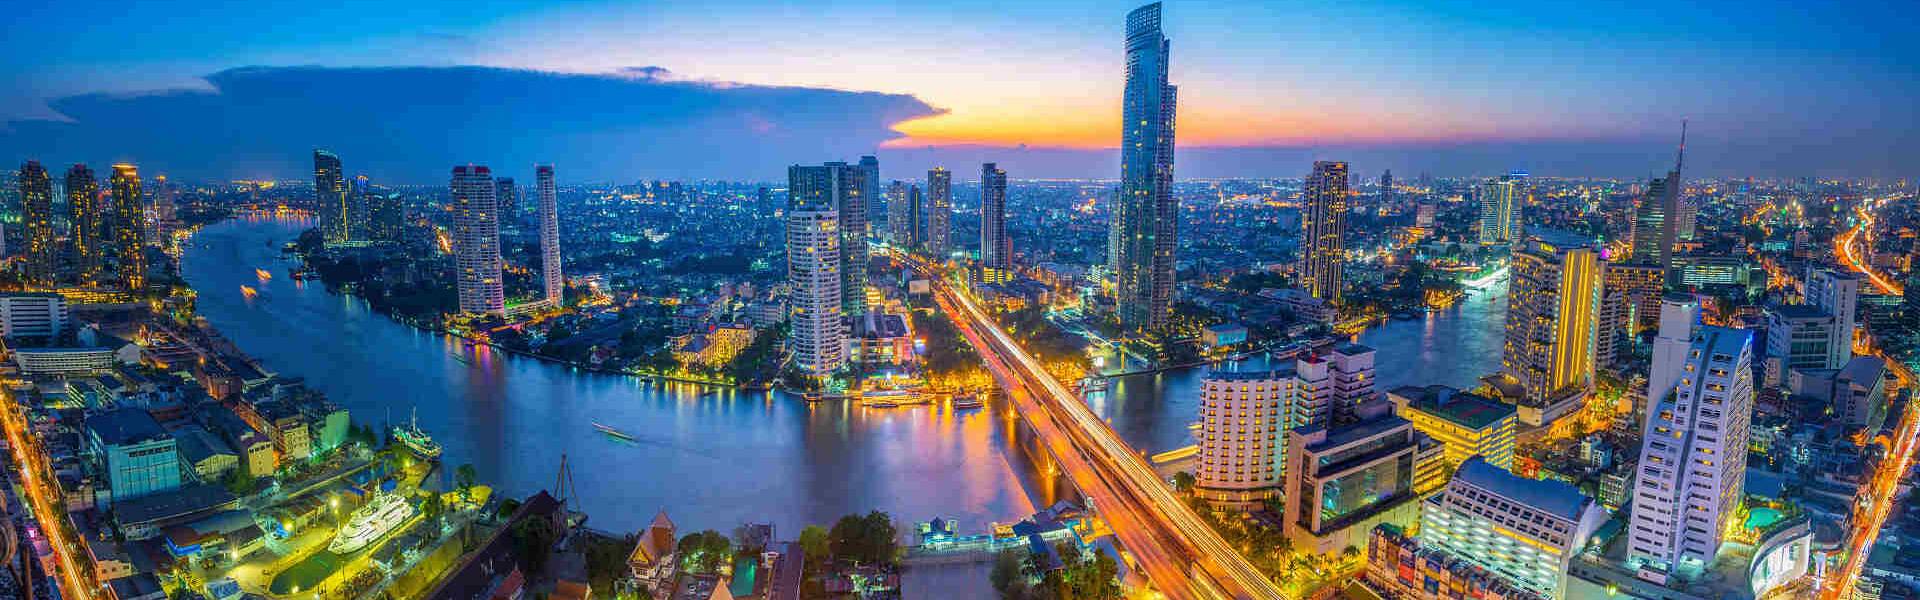 Eine Kombireise mit Sightseeing, Shopping und Strandurlaub ist die perfekte Möglichkeit, Bangkok in Thailand kennenzulernen